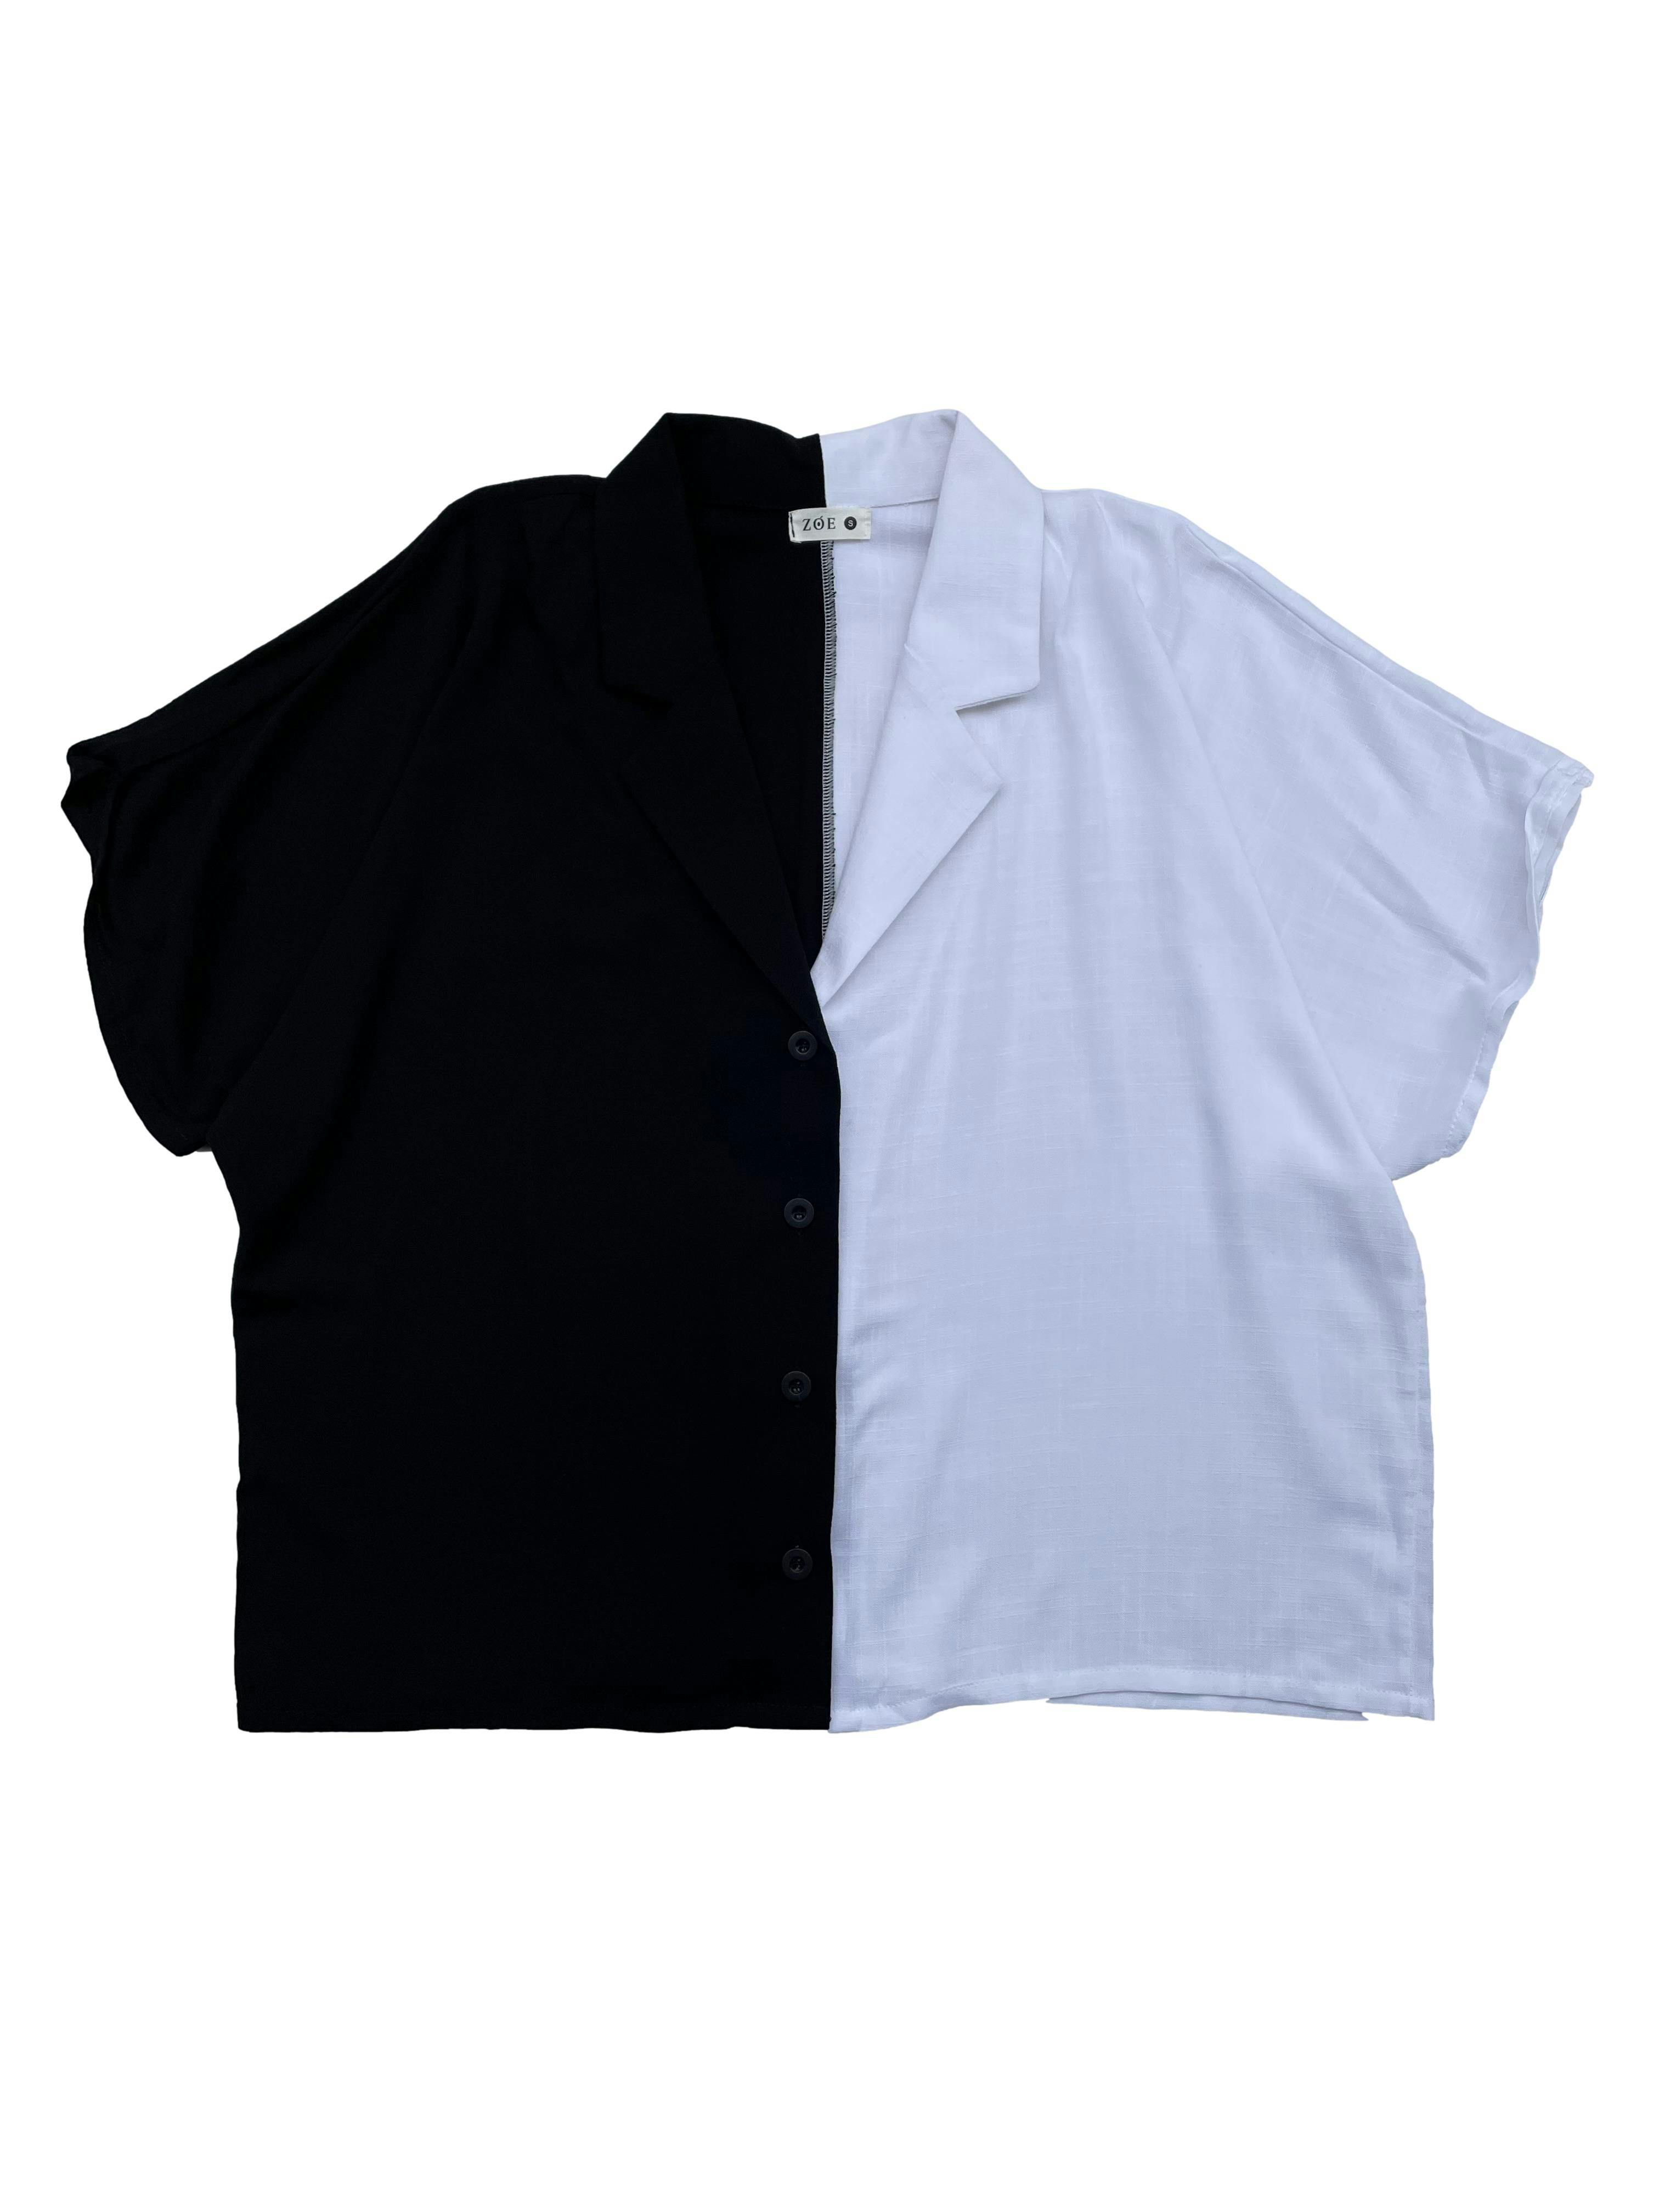 Blusa oversized Zoe color block blanco y negro, tela con caída, cuello cubano y botones. Busto 120cm Largo 60cm